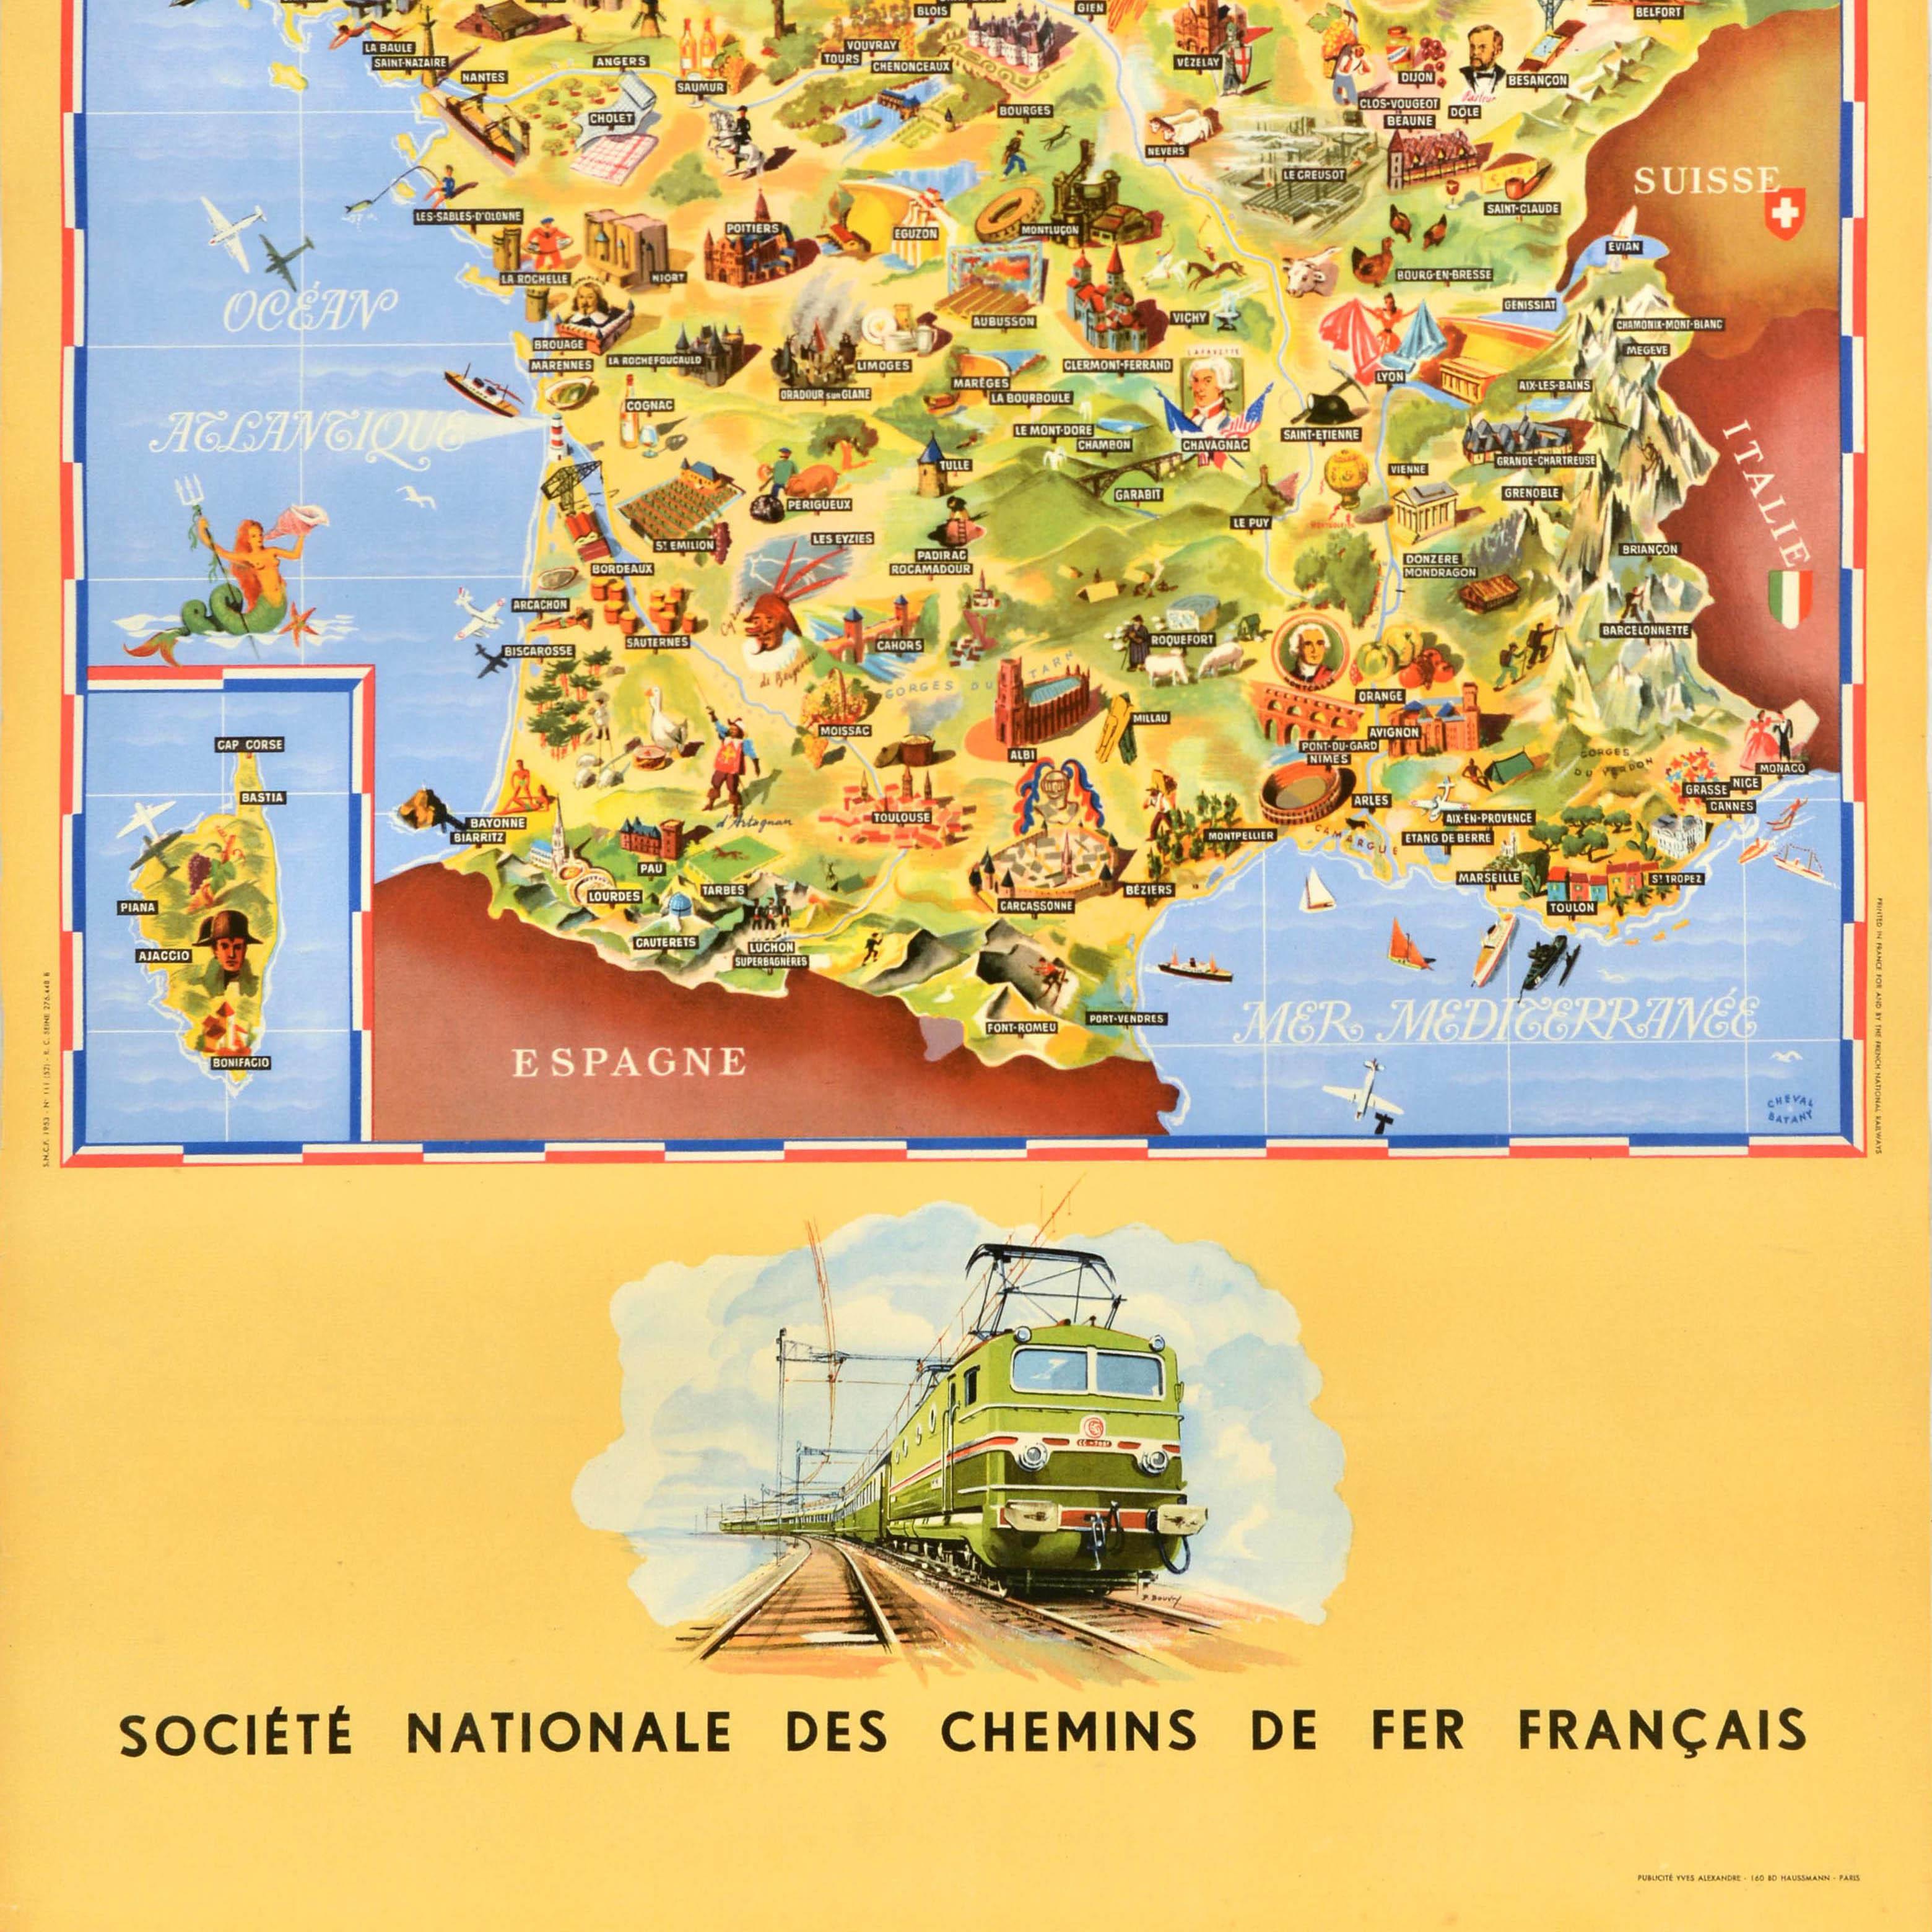 Originale Eisenbahn-Reisekarte im Vintage-Stil - Frankreich Societe Nationale des Chemins de Fer Francais - mit einer farbig illustrierten Karte von Jean Cheval und Alex Batany (als Cheval-Batany), auf der Sehenswürdigkeiten und Wahrzeichen wie alte